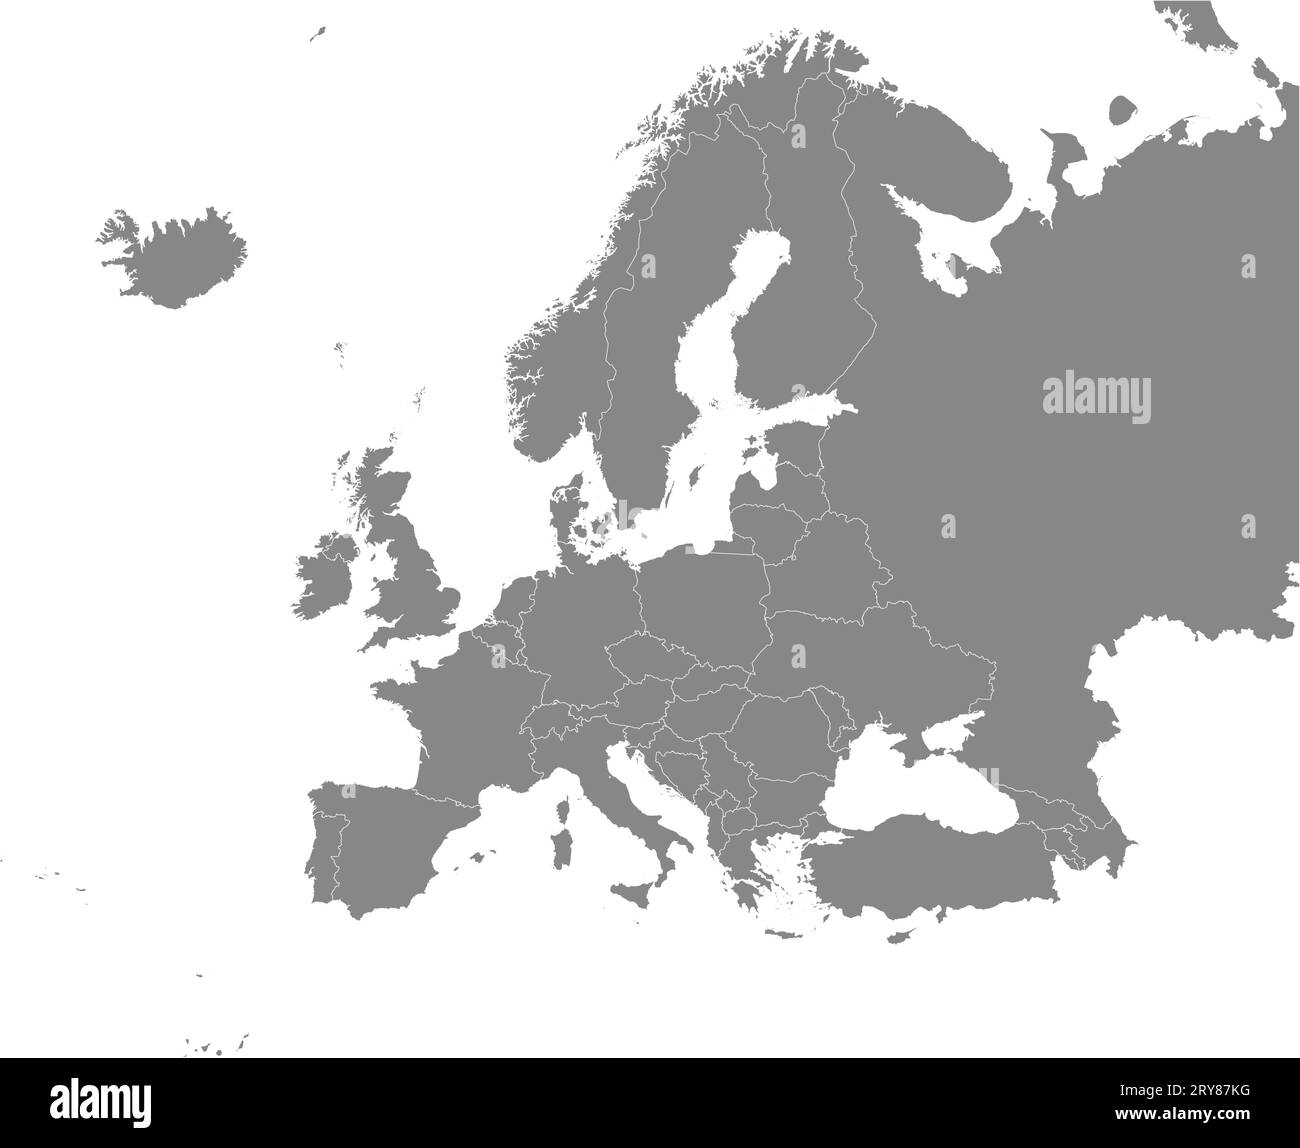 Carte couleur CMJN GRIS de L'EUROPE (avec frontières nationales) Illustration de Vecteur